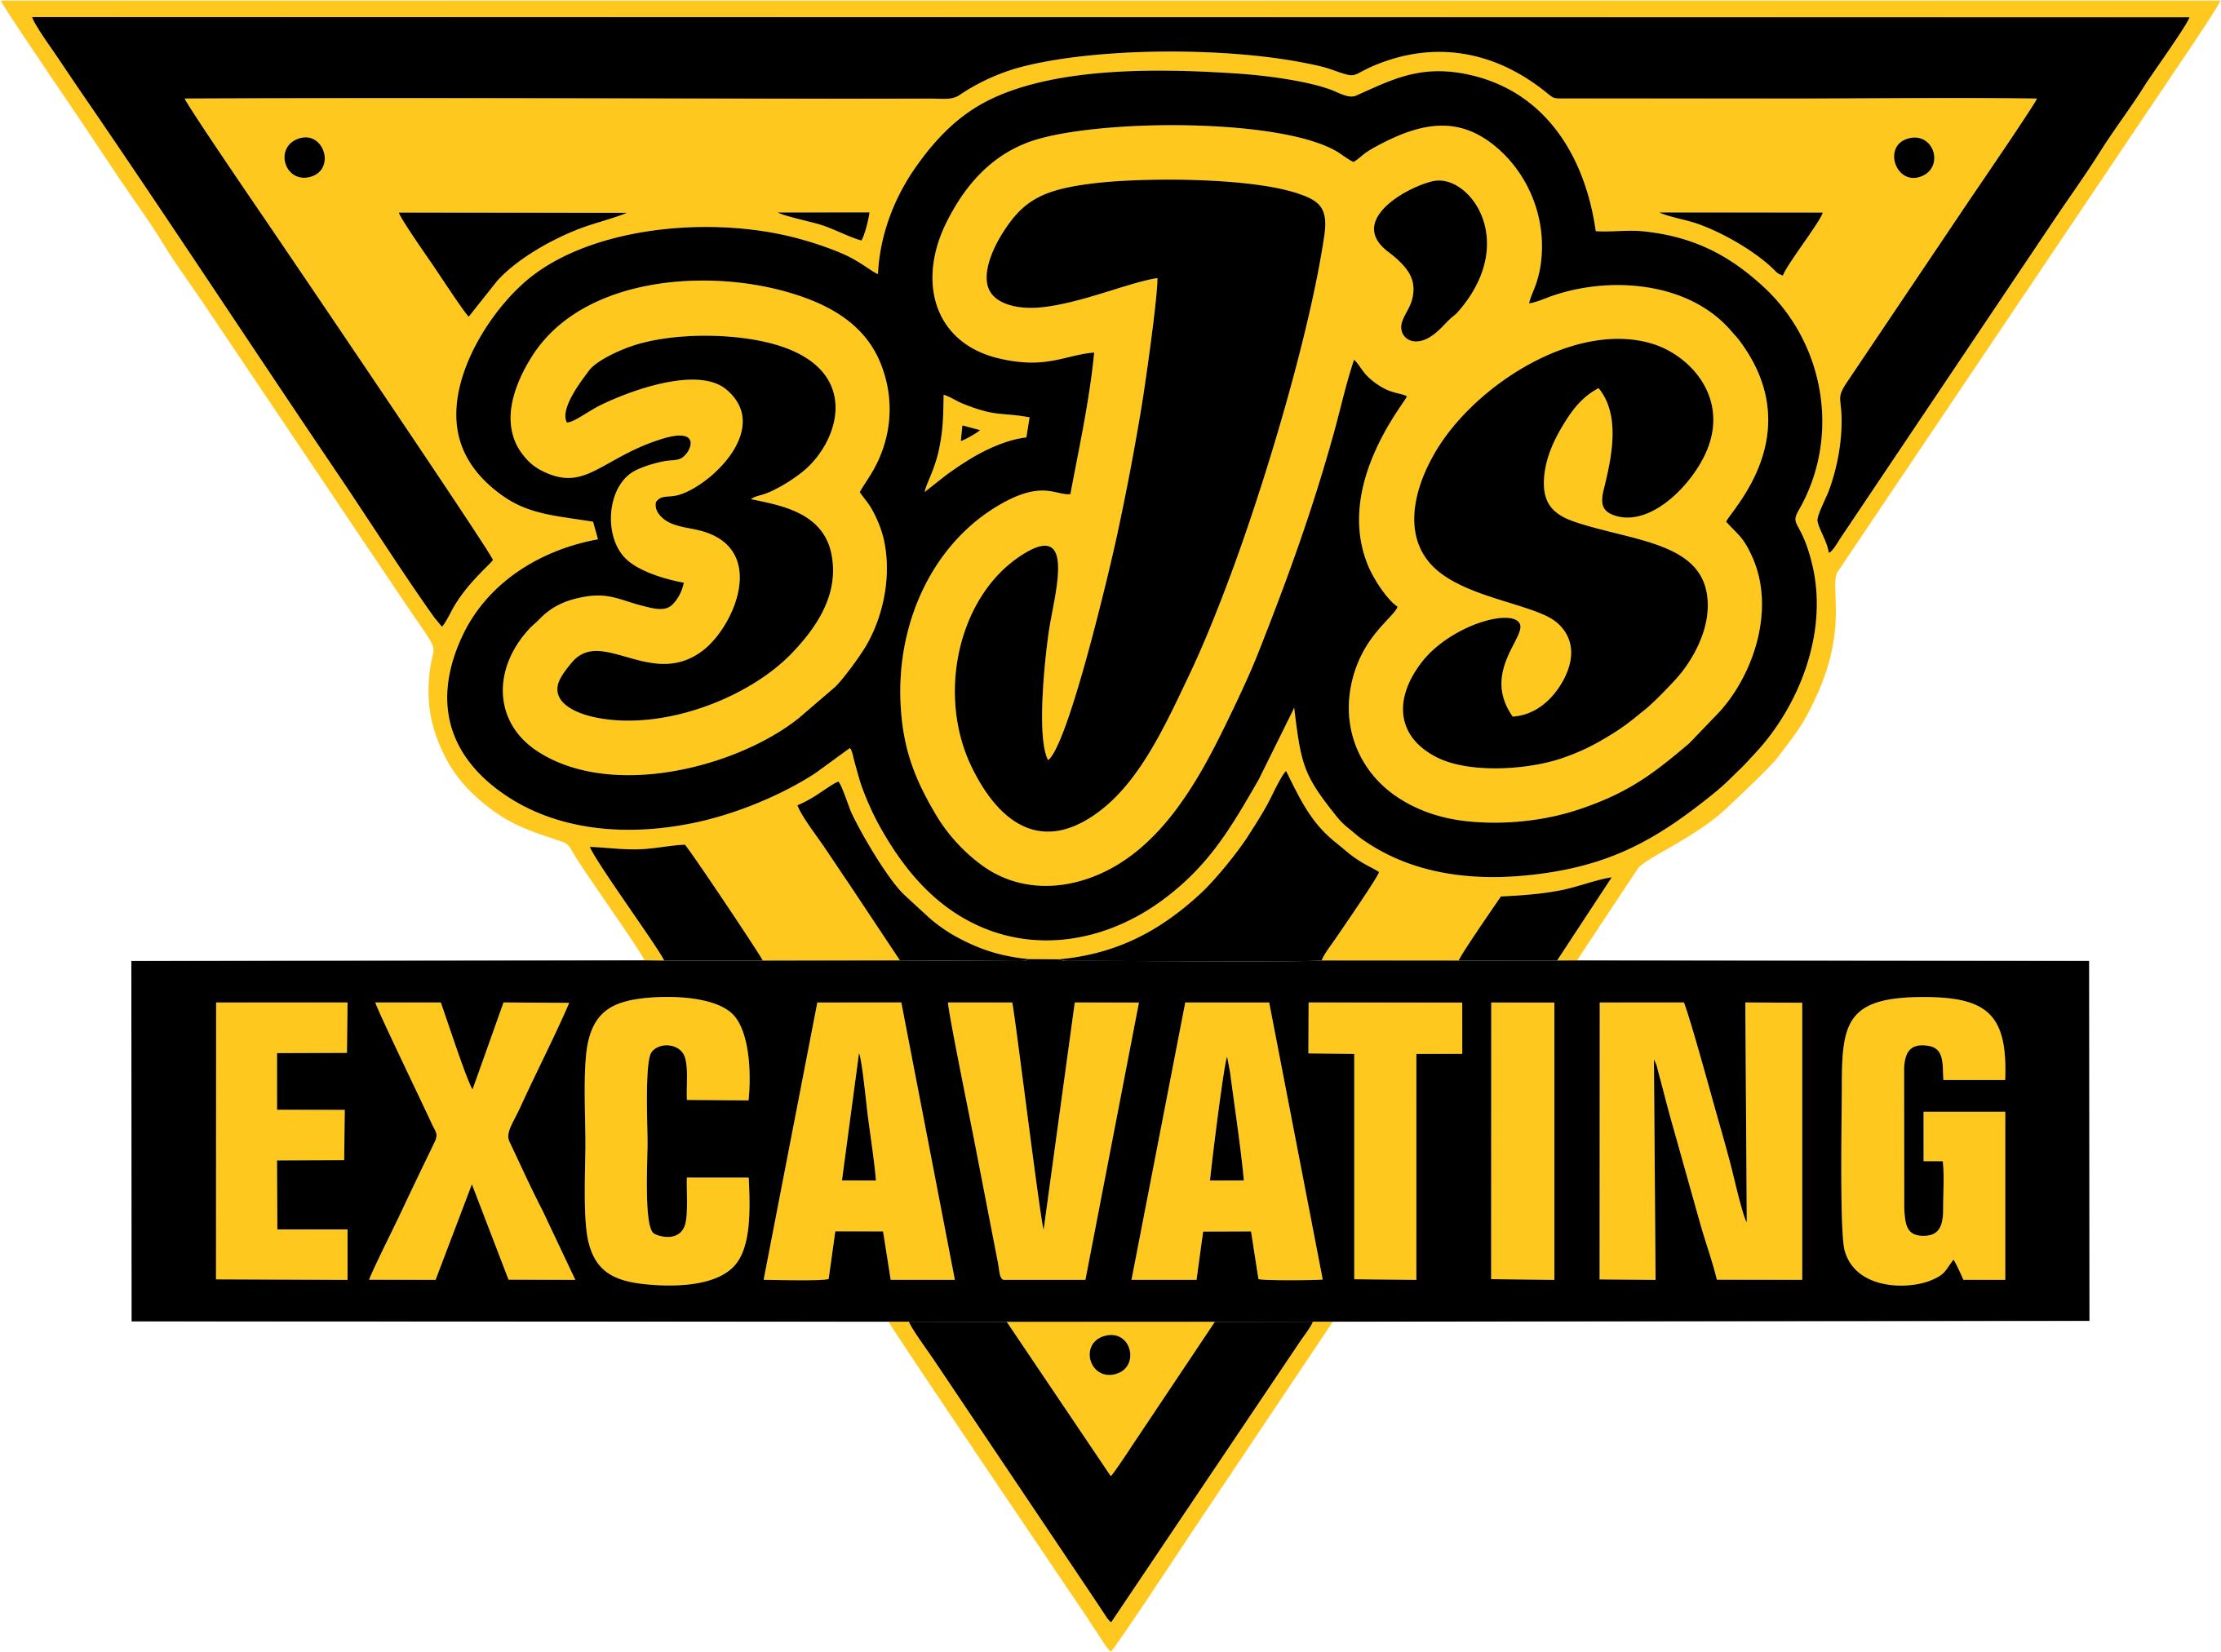 3J's Excavating